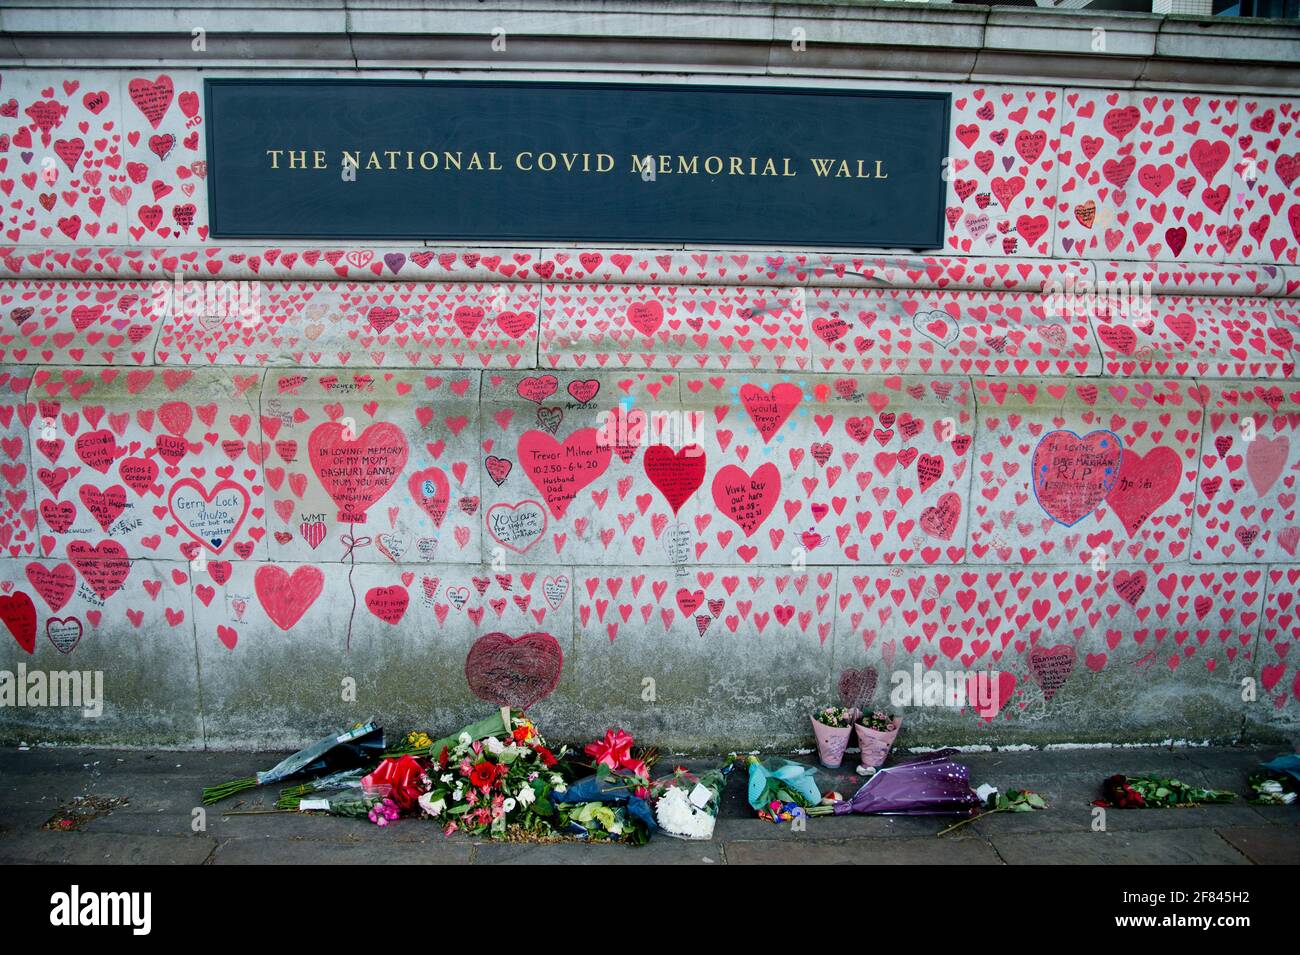 Southbank, Londra, Inghilterra, Regno Unito. National Covid Memorial Wall. Cuori rossi per commercare coloro che sono morti di Covid. Foto Stock